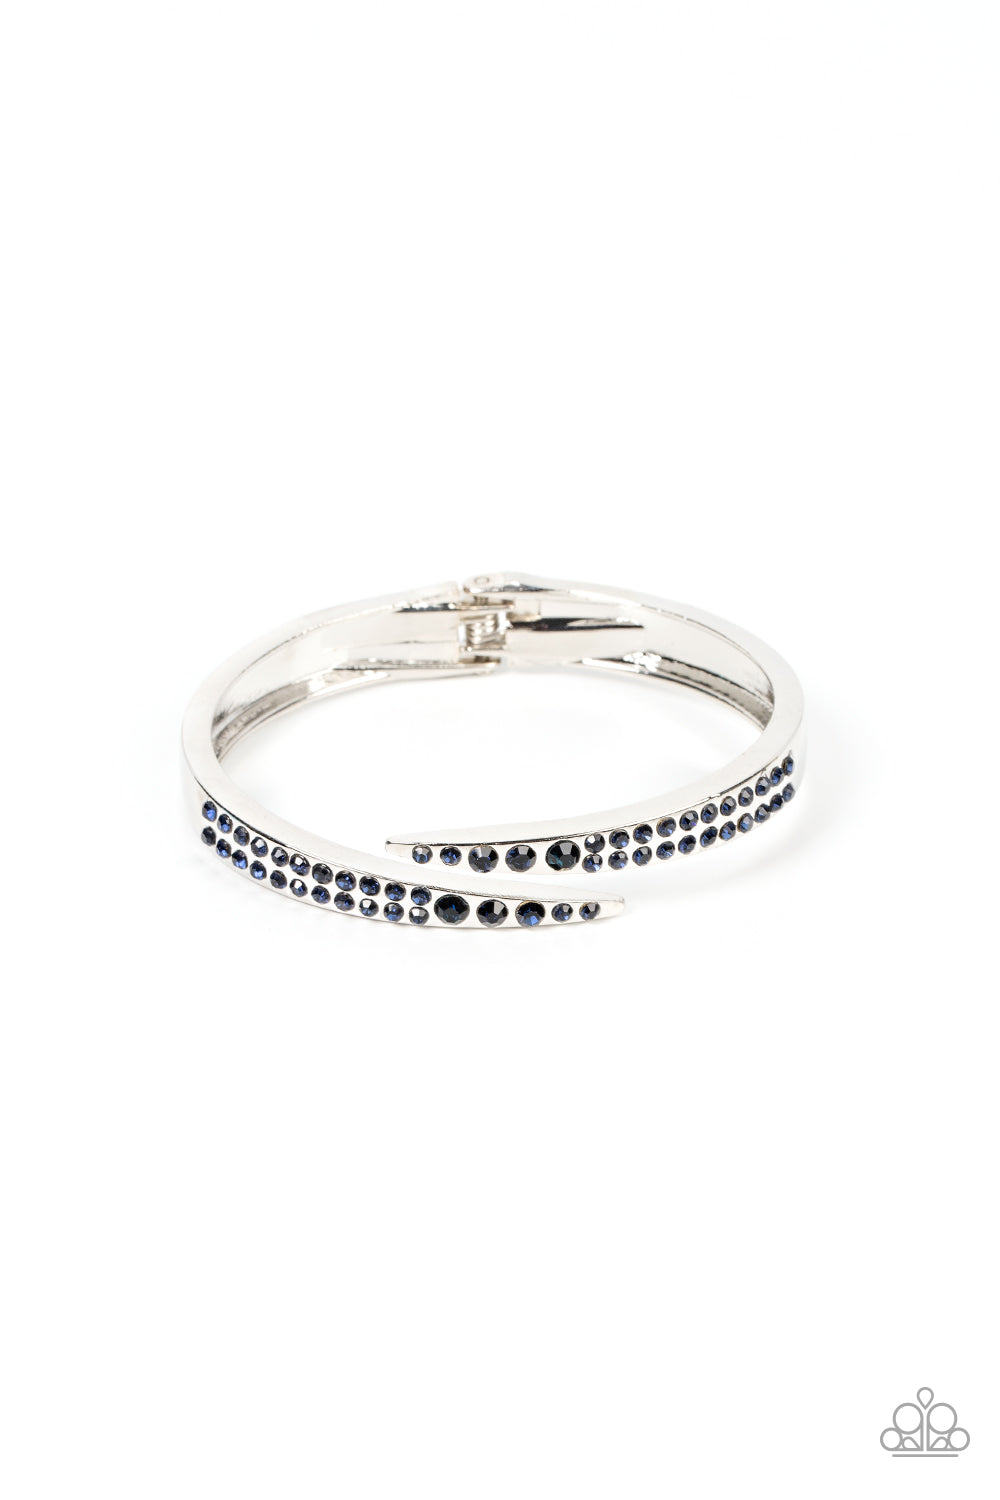 Sideswiping Shimmer - Blue Rhinestones & Silver Bar Paparazzi Hinge Bracelet